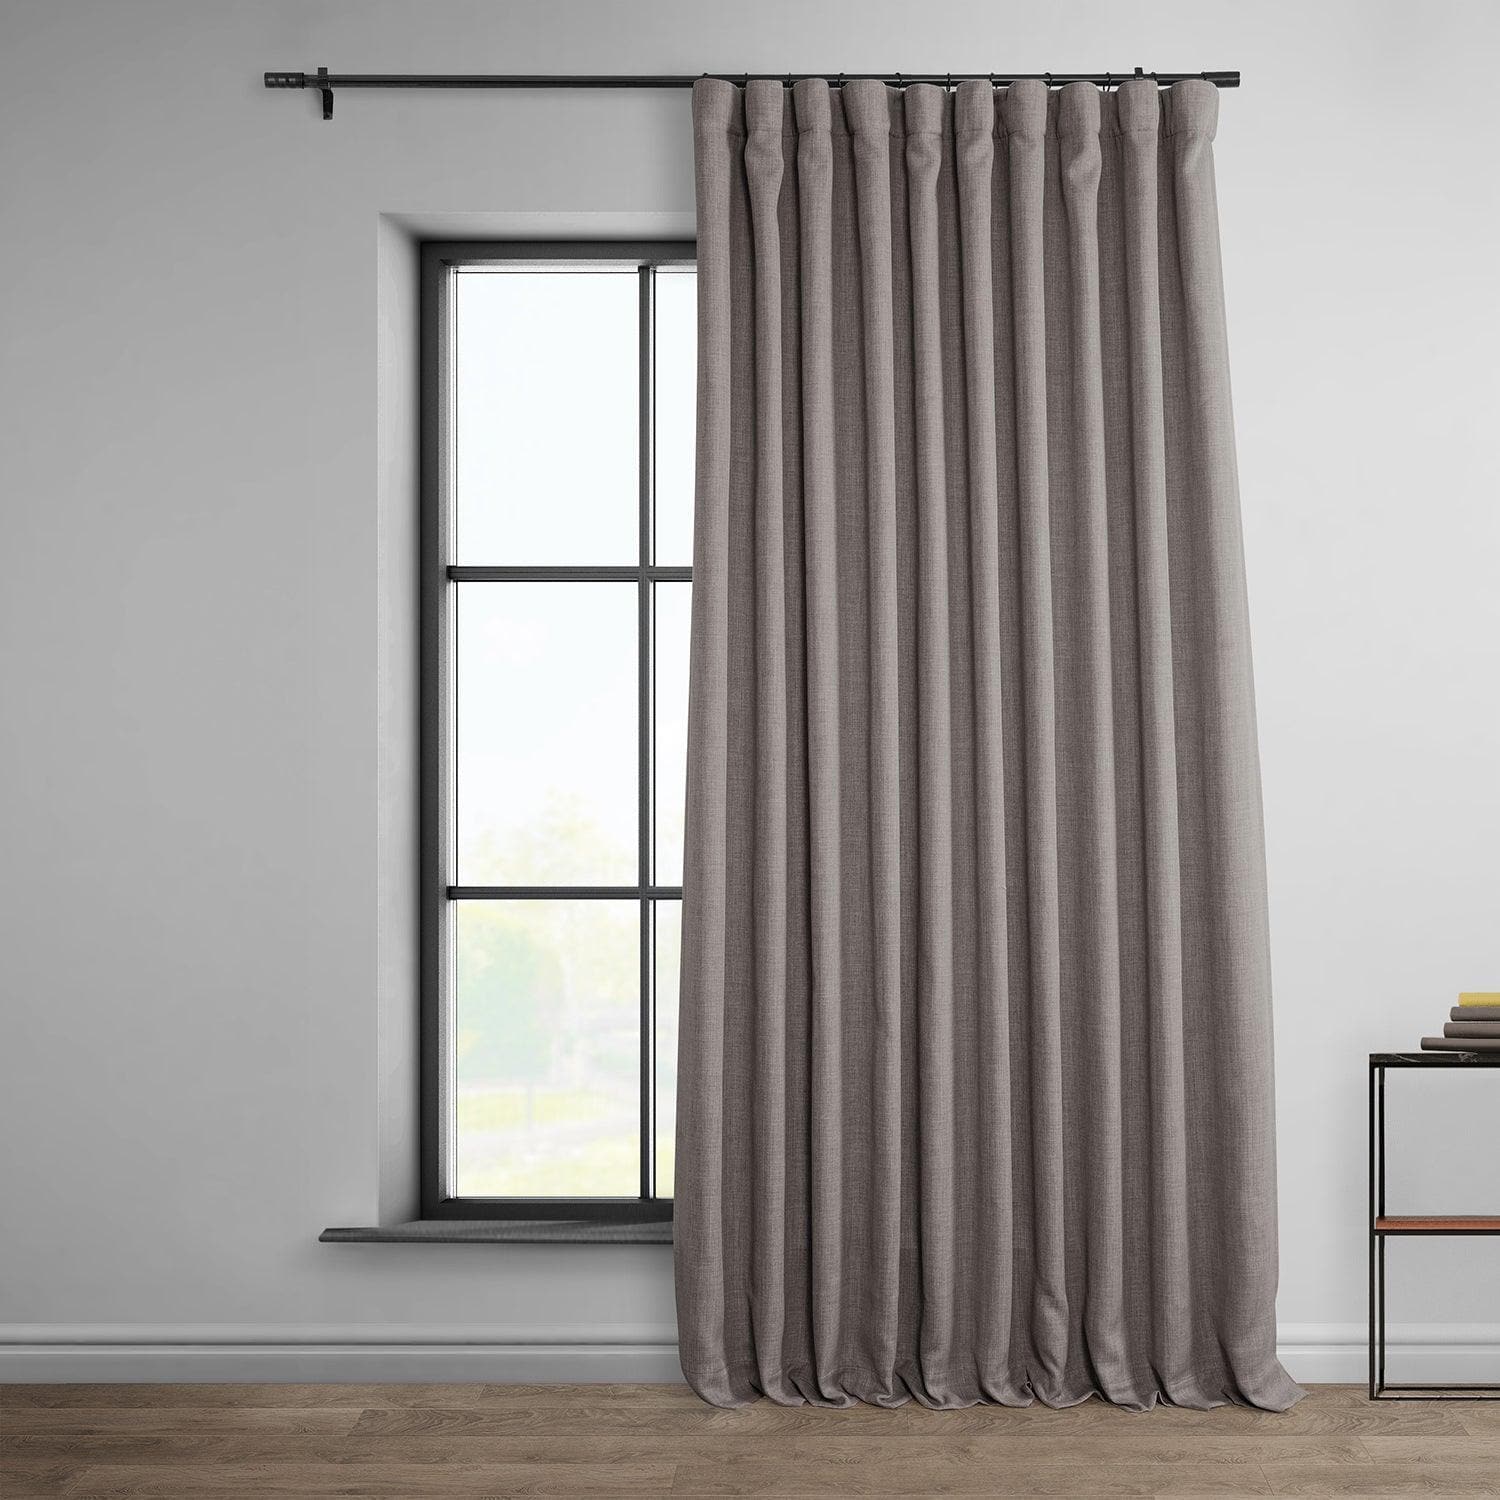 Mink Extra Wide Textured Faux Linen Room Darkening Curtain